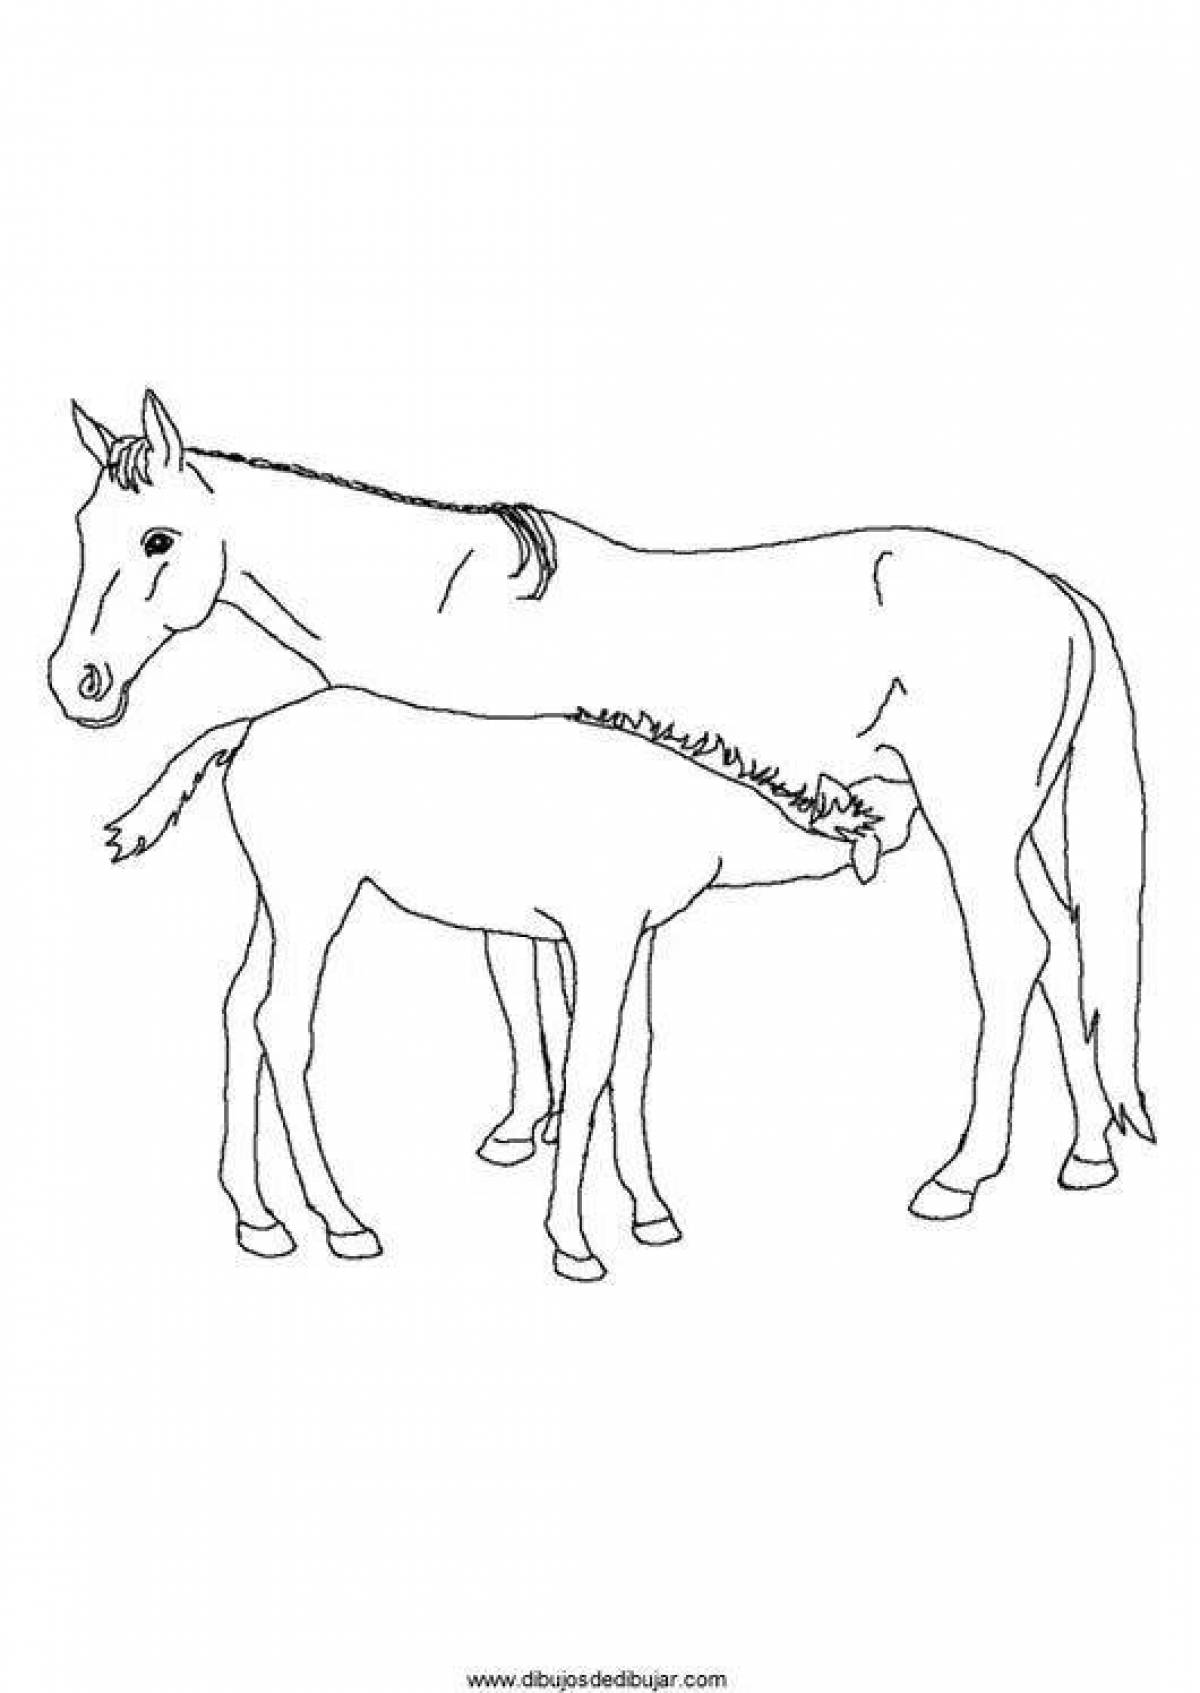 Раскраски для мальчиков Раскраски лошадь и жеребенок